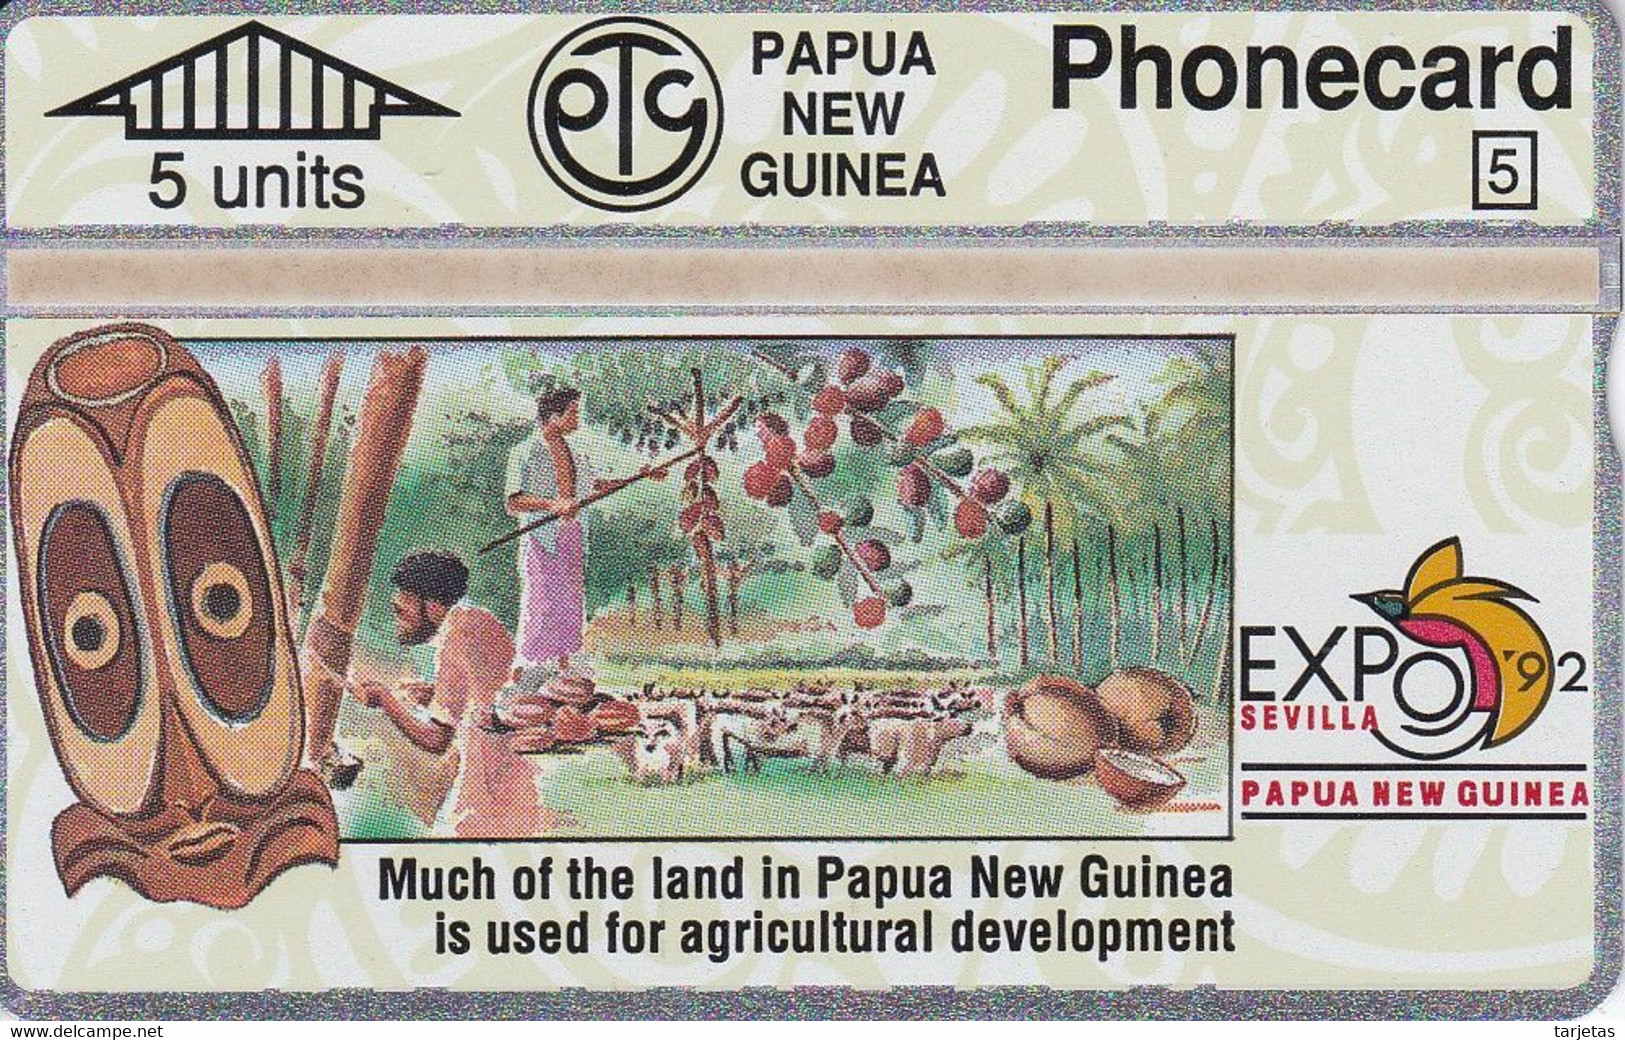 TARJETA DE PAPUA Y NUEVA GUINEA EXPO 92 SEVILLA (203A) (NUEVA-MINT) - Papua Nueva Guinea